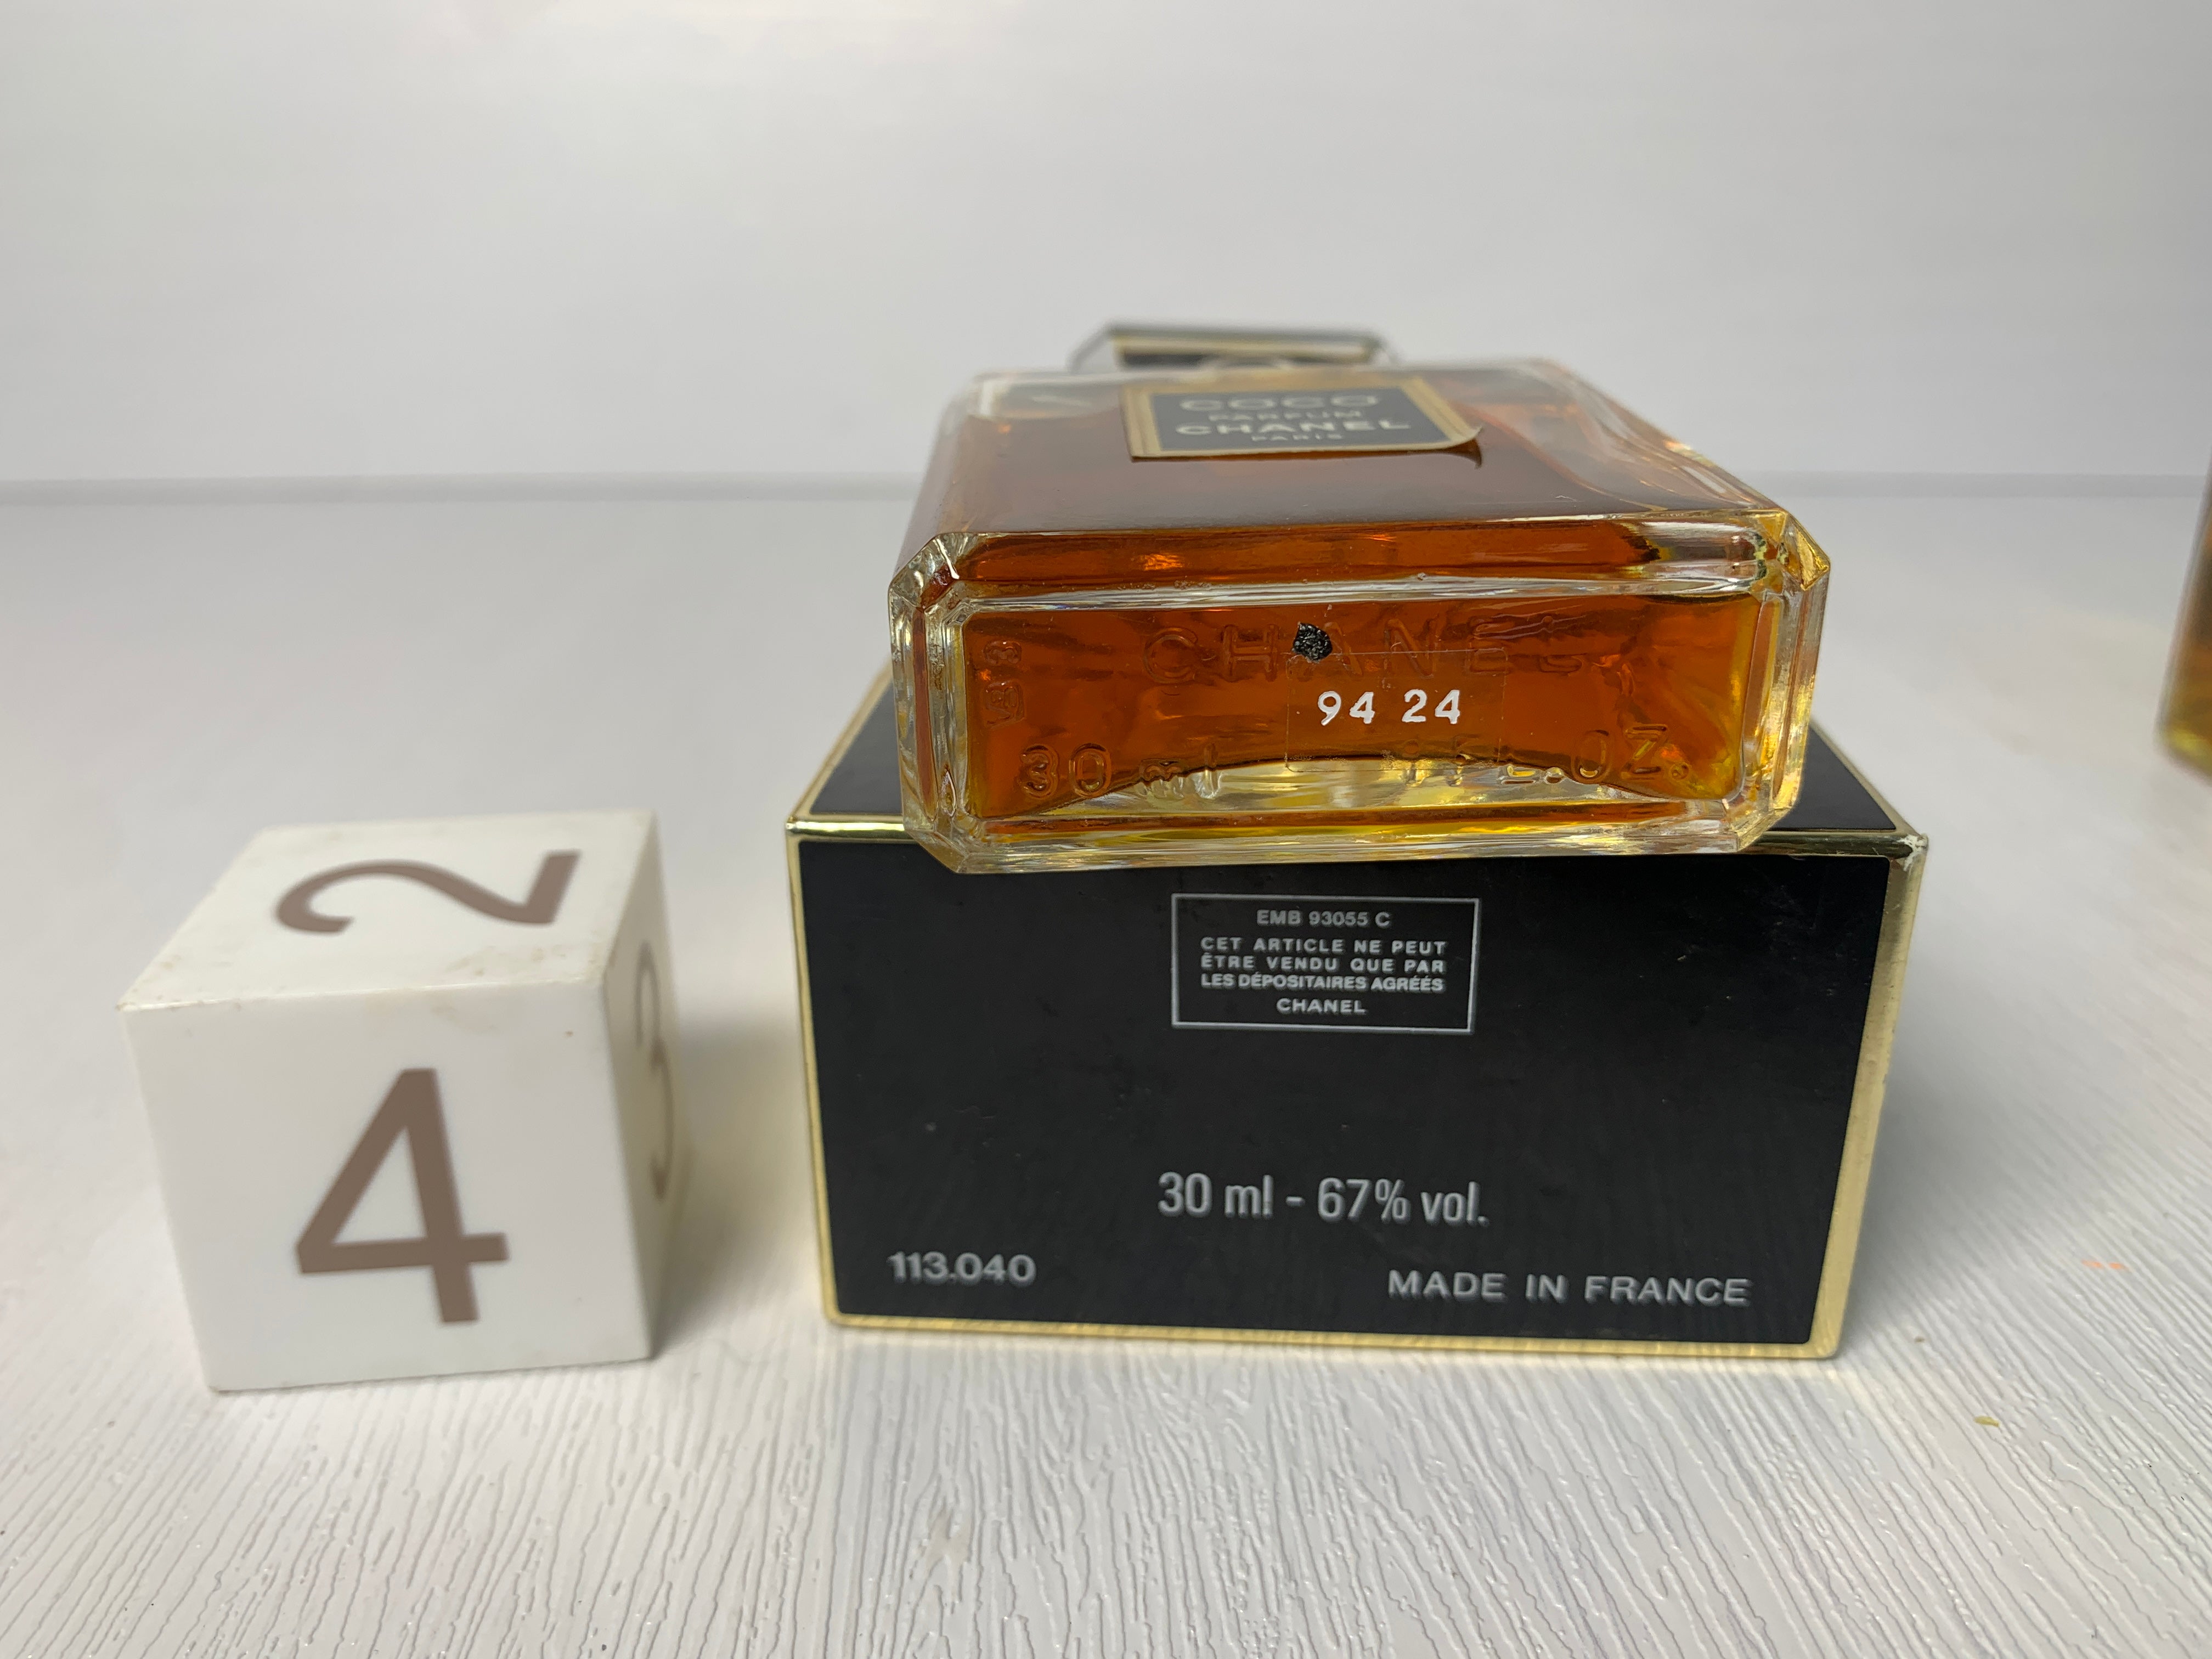 Rare Chanel coco parfum 7ml 15ml 30ml Perfume - 12FEB22 – Trendy